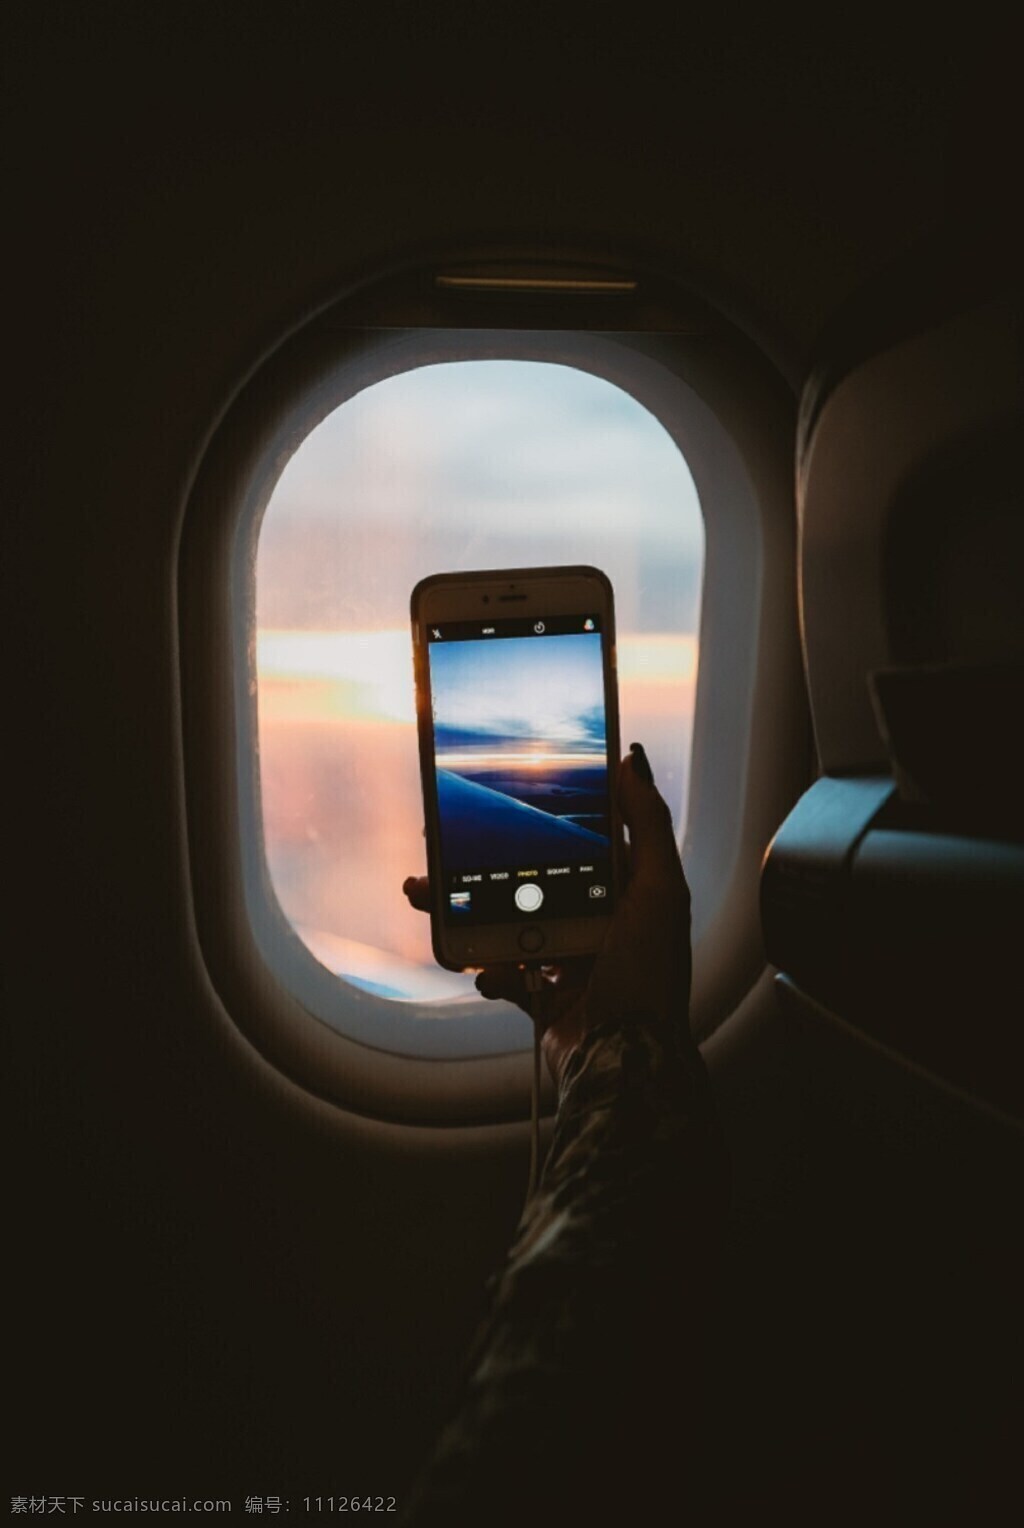 飞机窗外 飞机 机窗 手机 拍摄 旅行